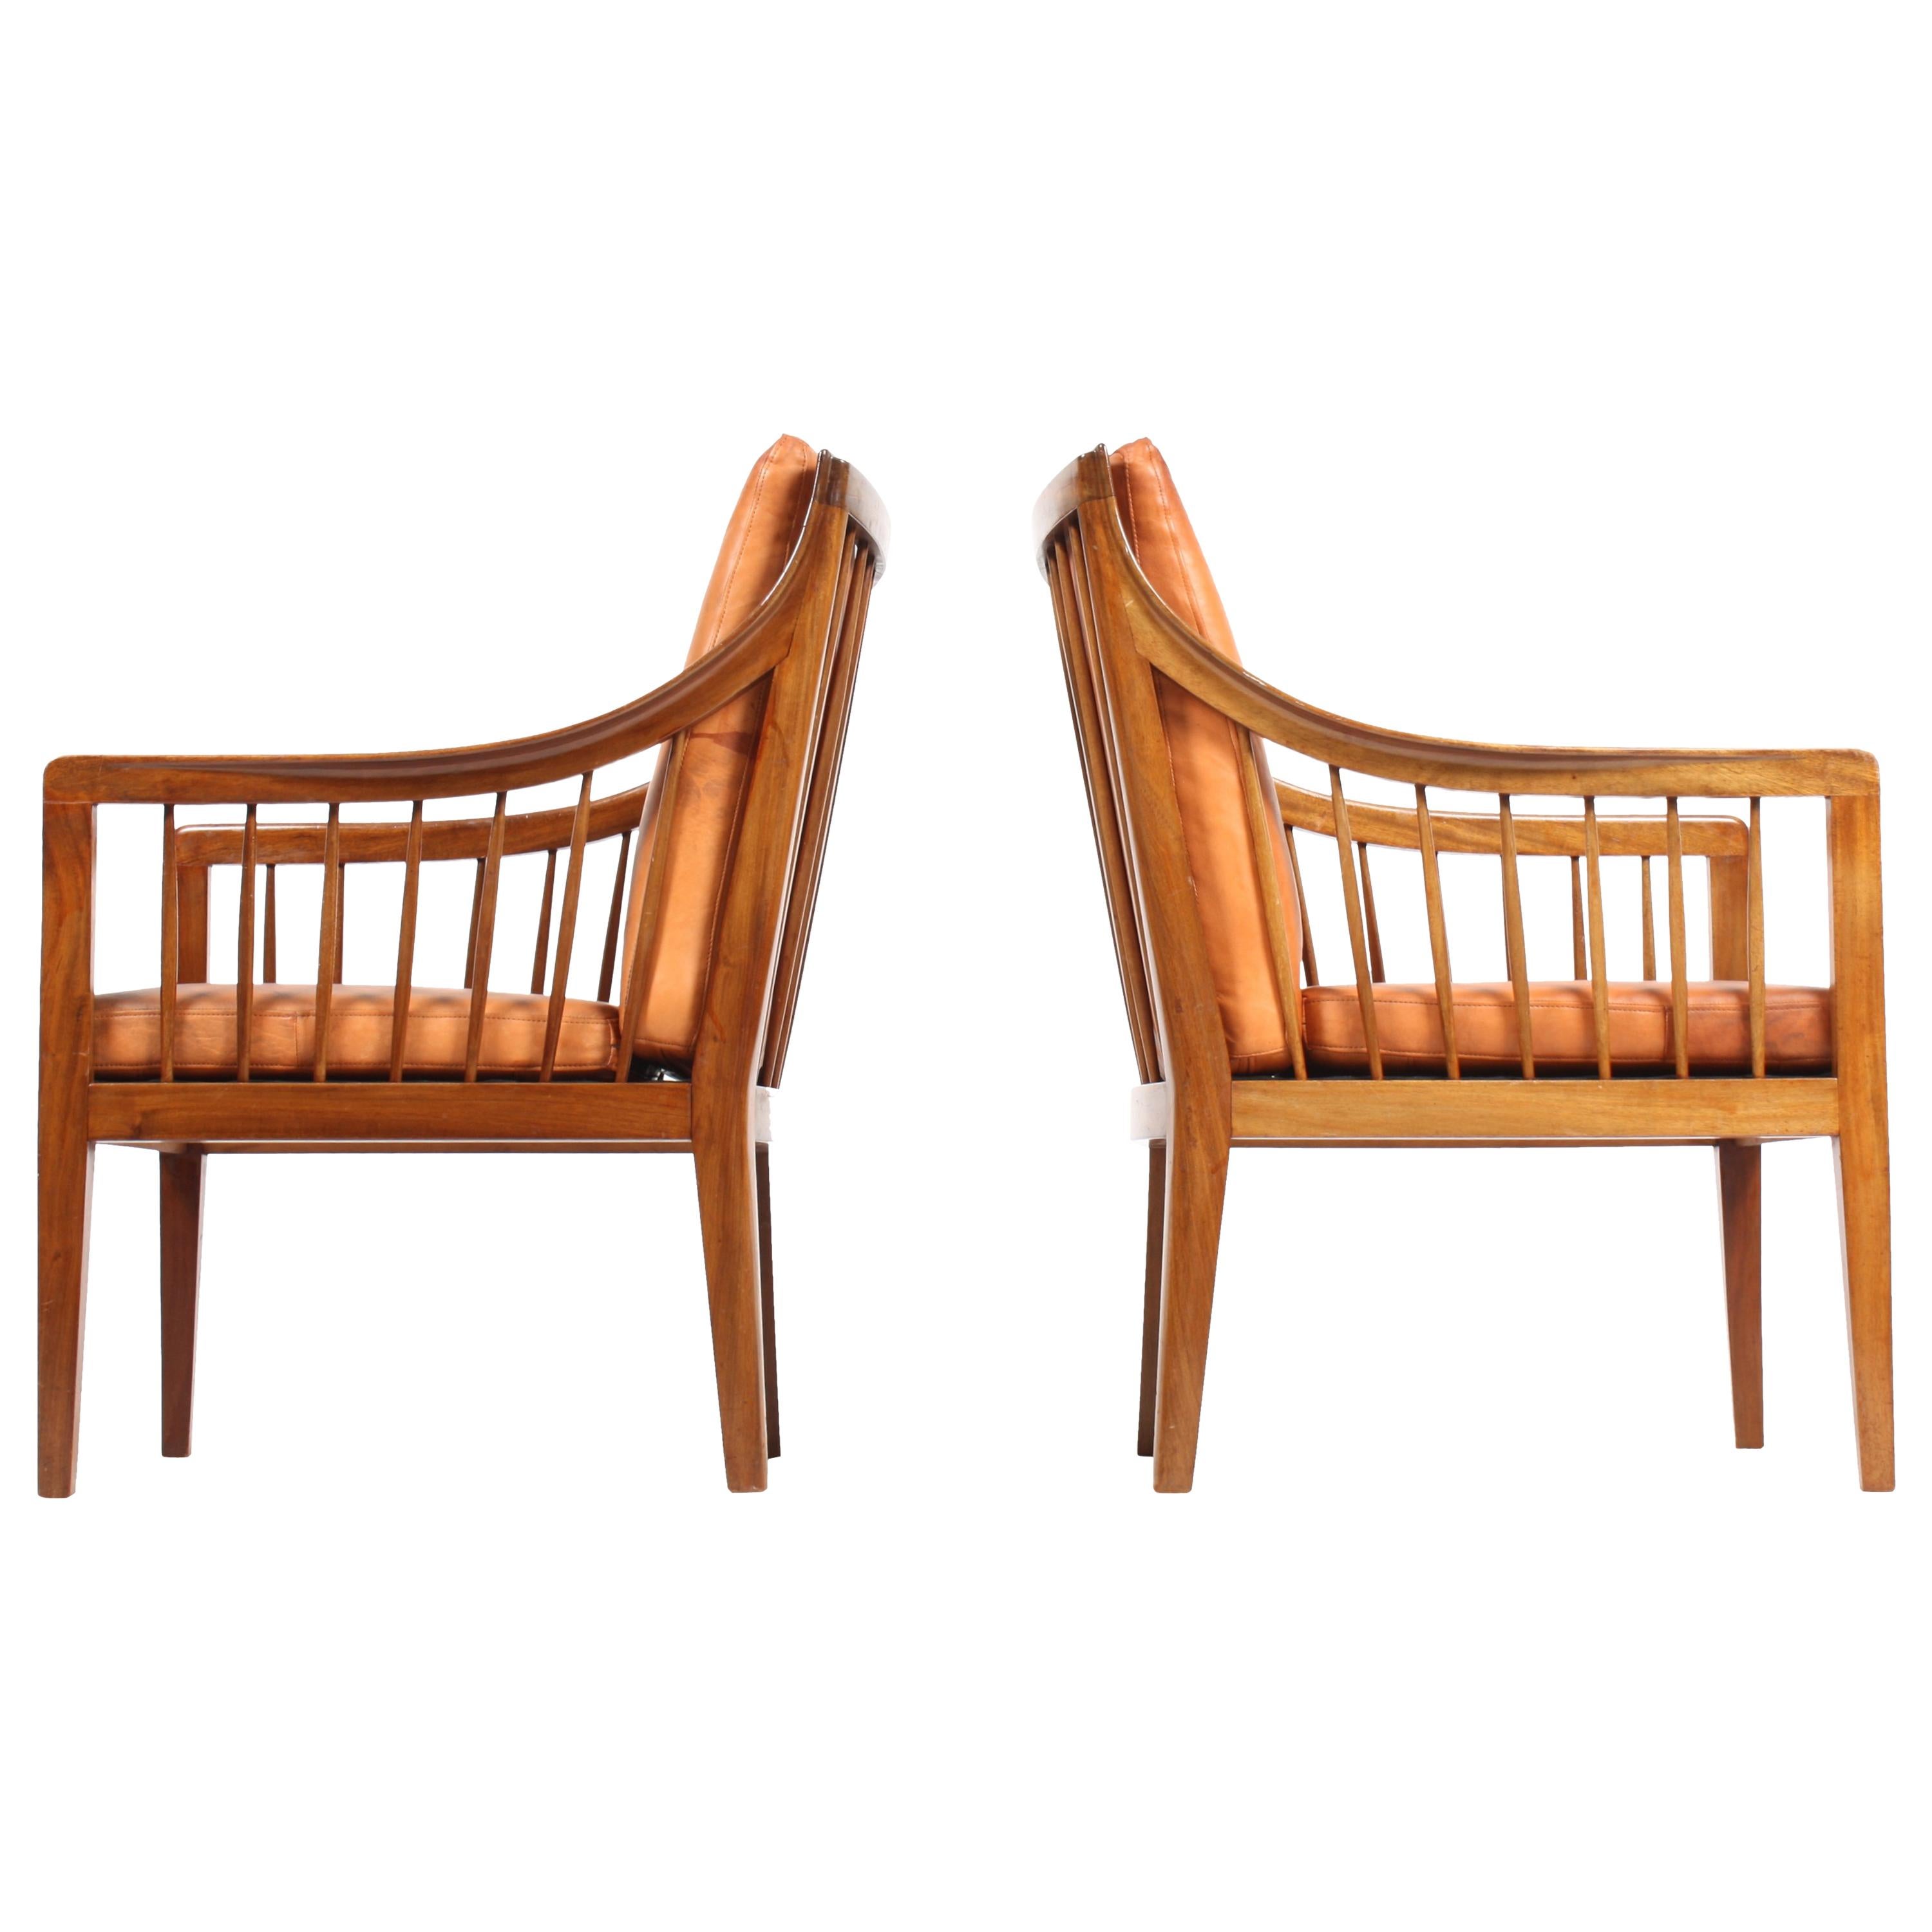 Pair of Classic Midcentury Danish Lounge Chairs, 1940s